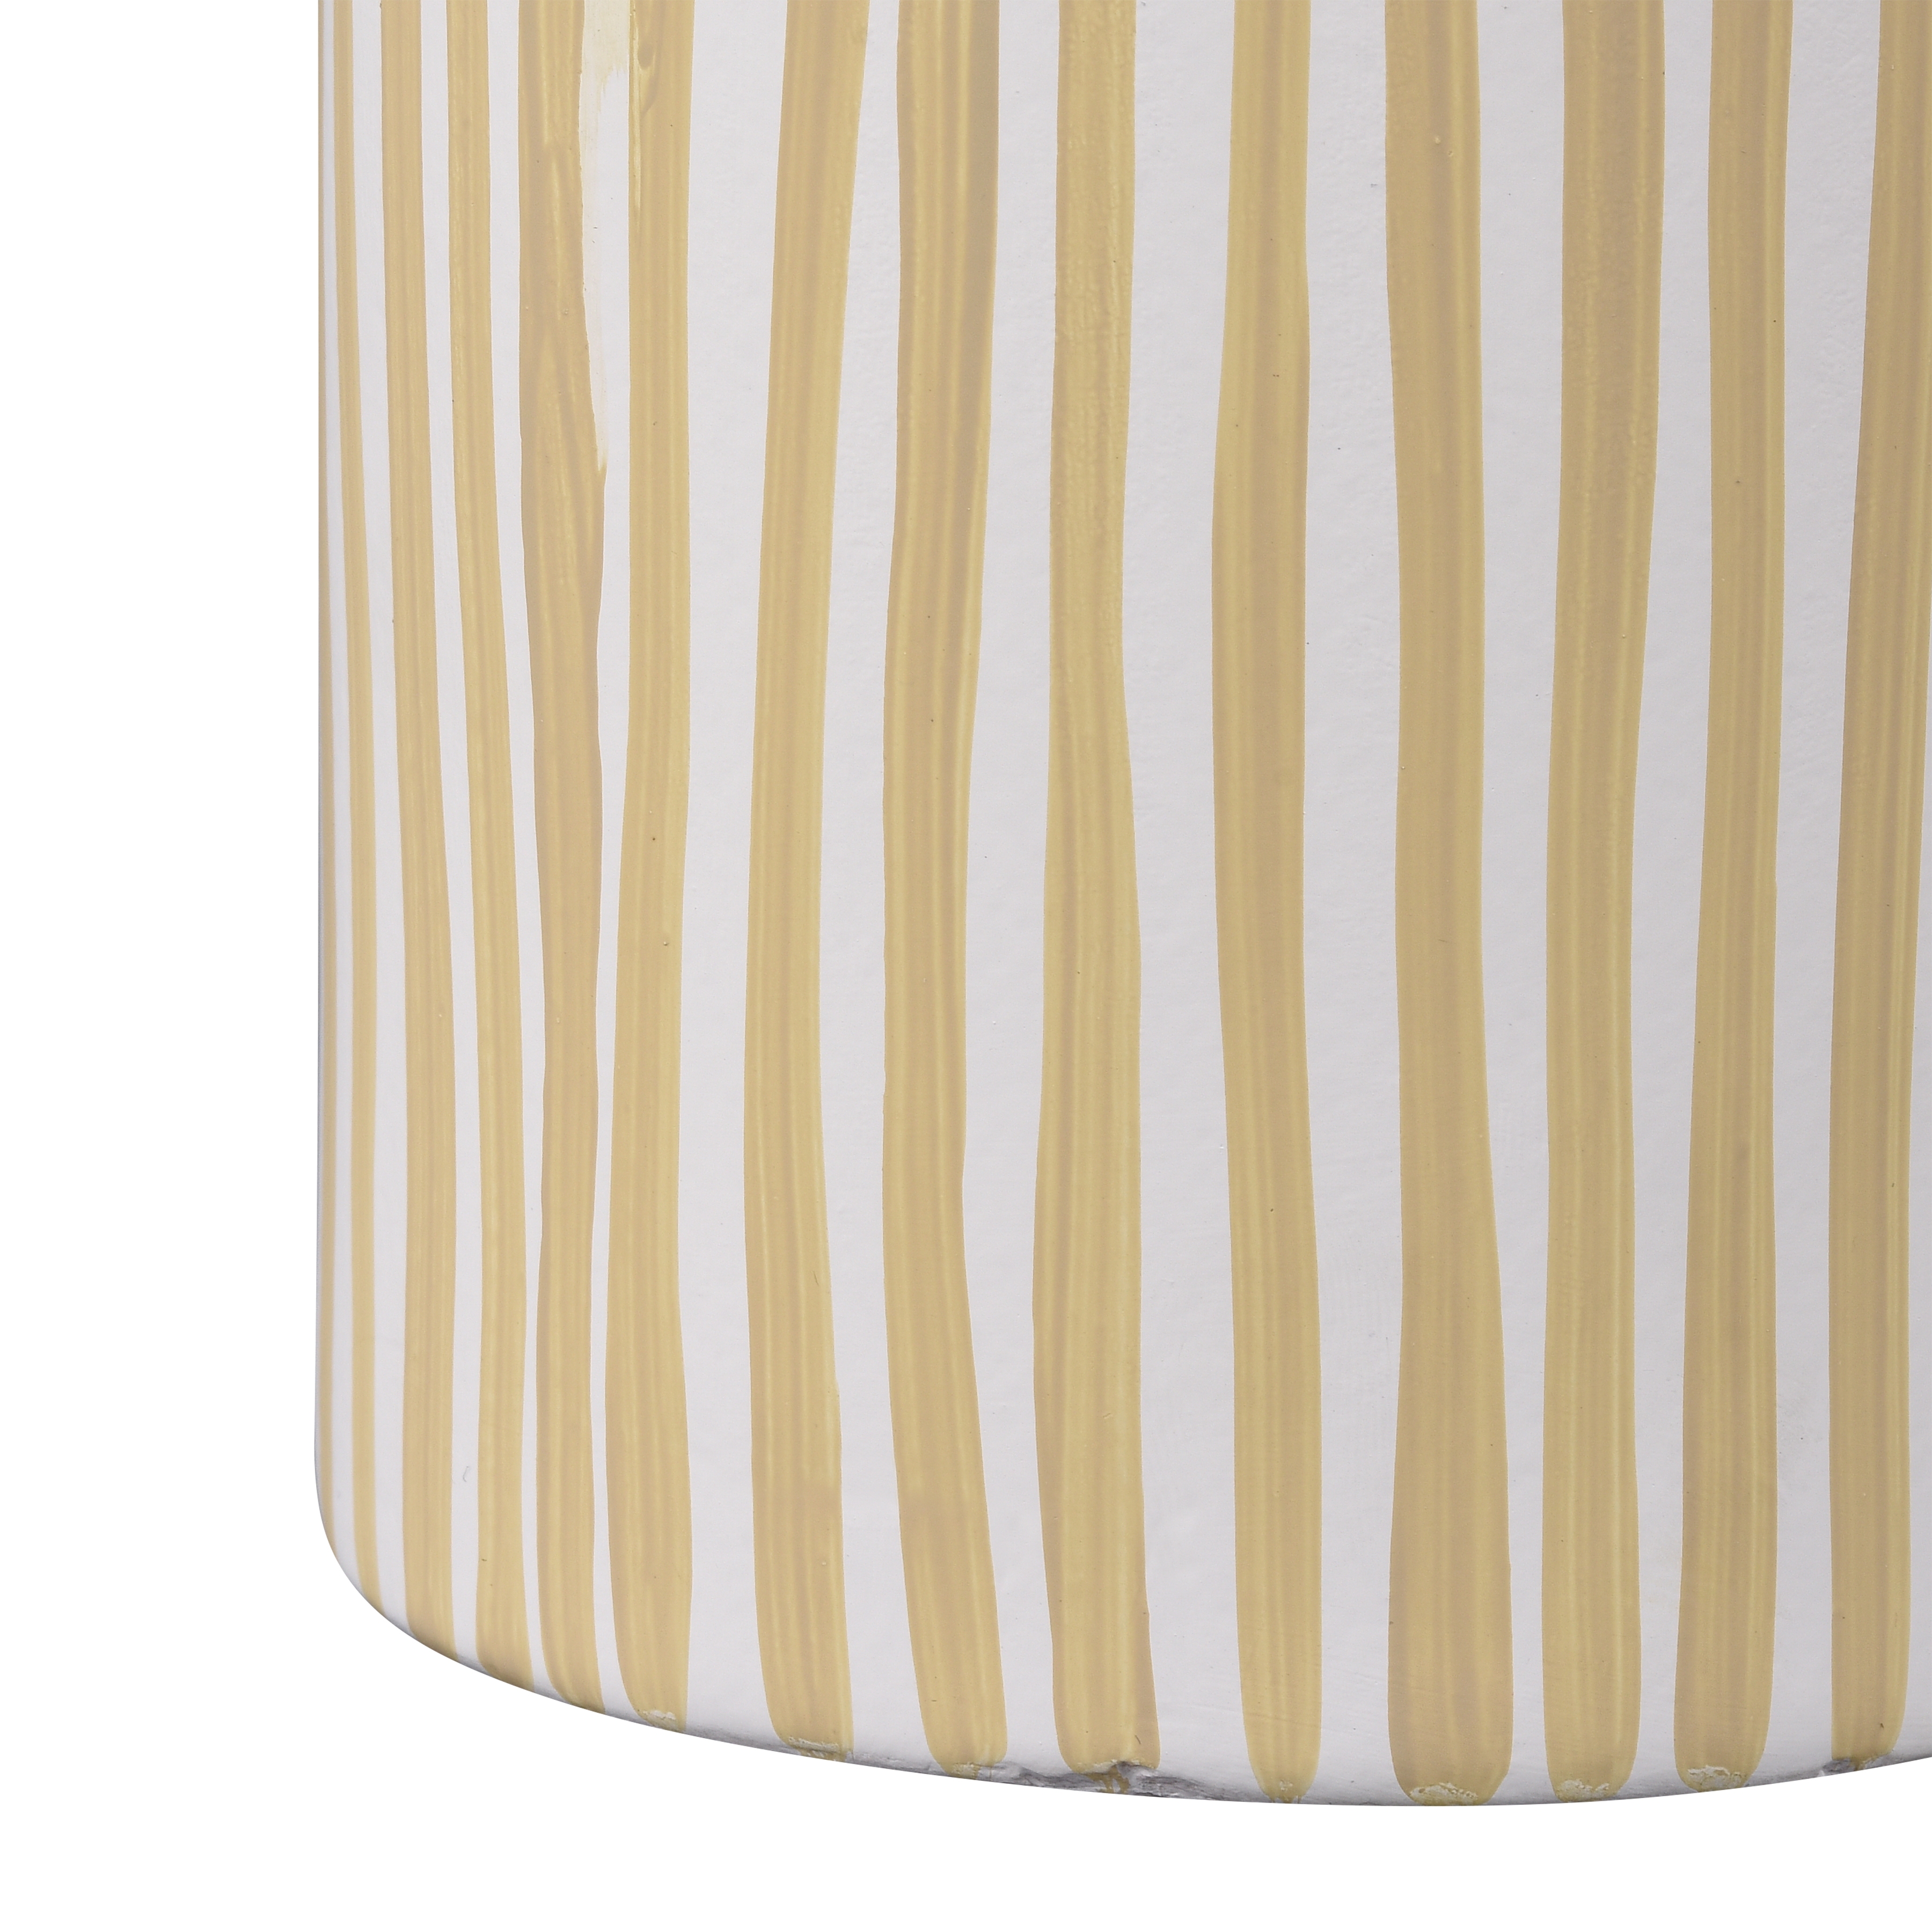 Hawking Striped Vase - Large - Image 2